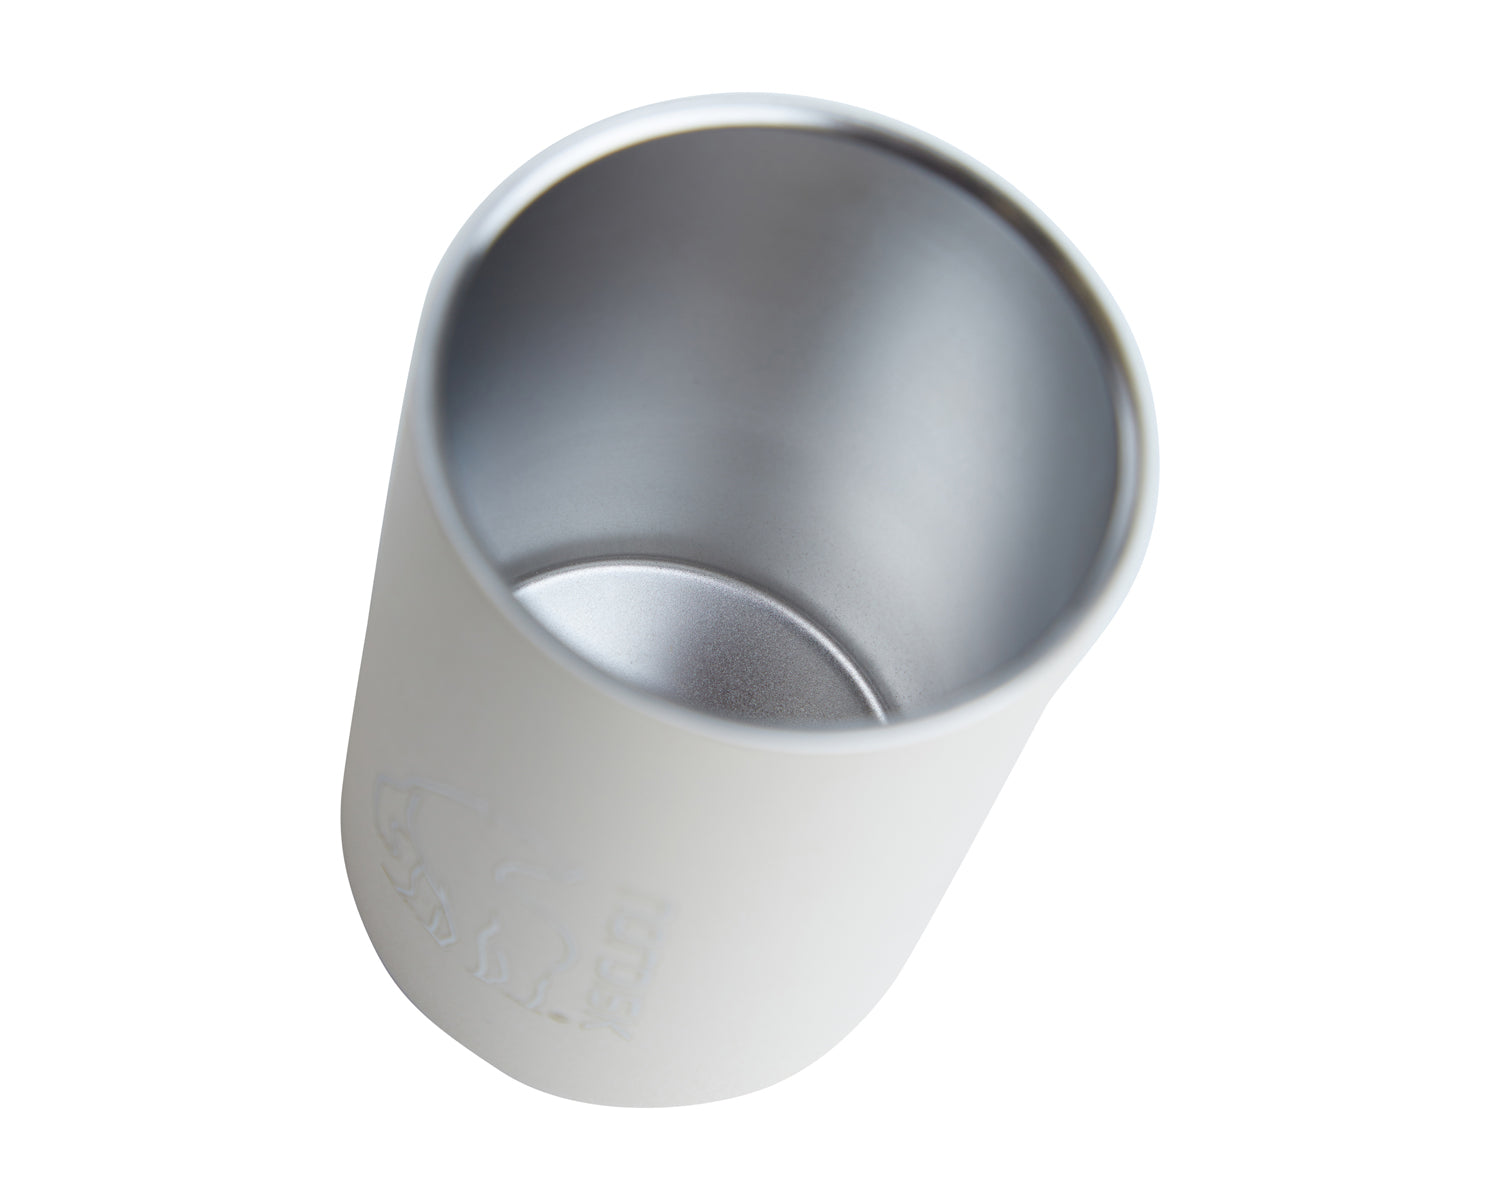 Steel mug - 300 ml - Sandshell